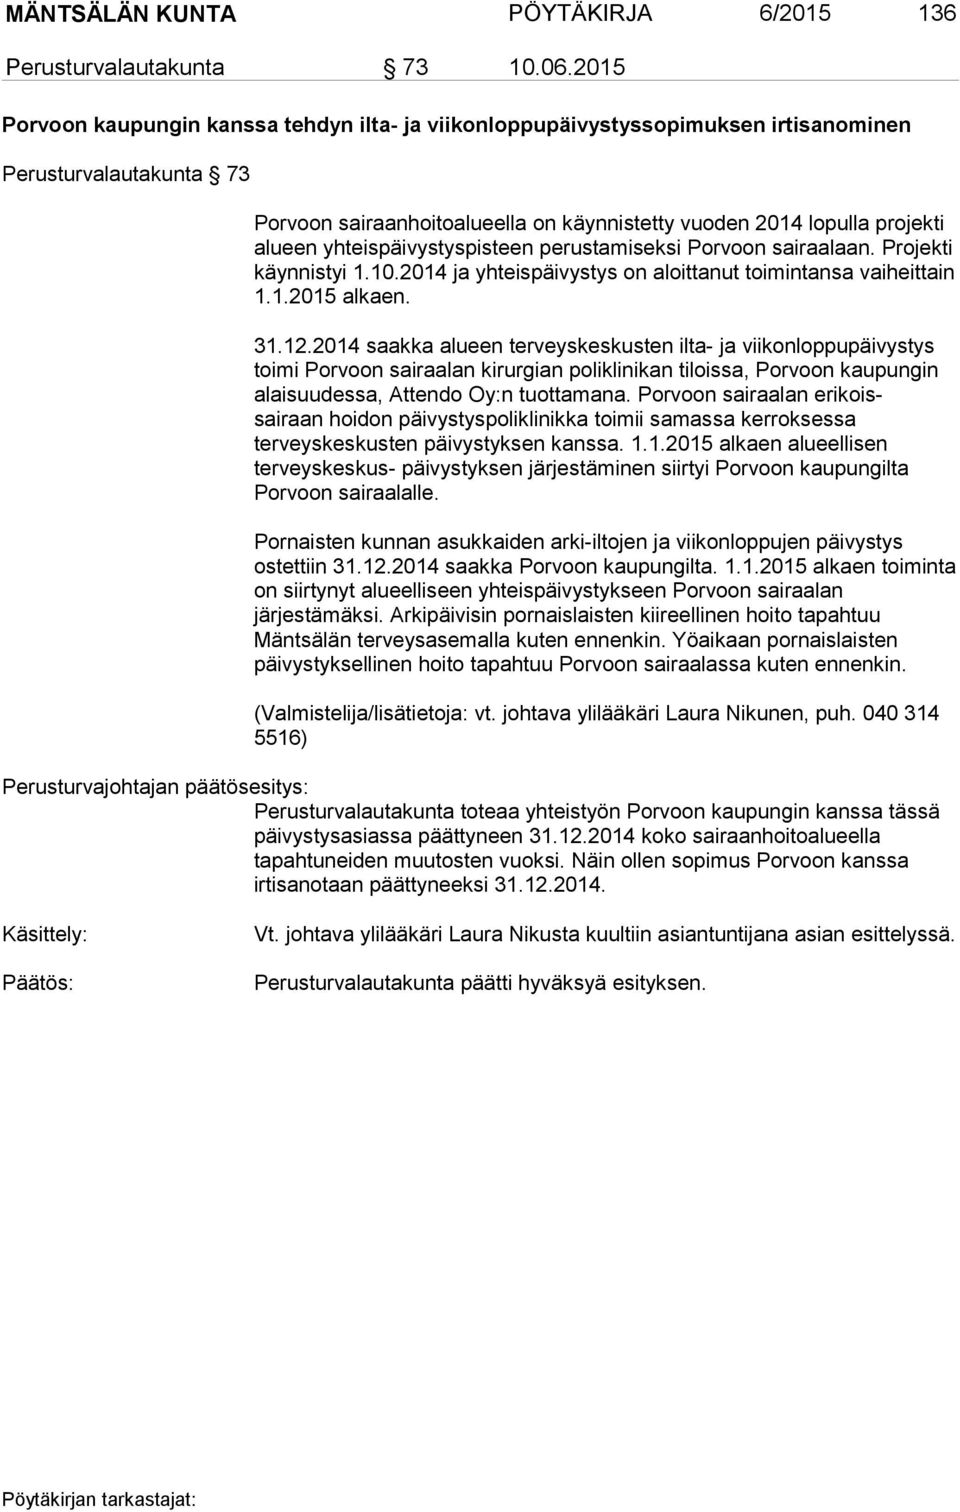 yhteispäivystyspisteen perustamiseksi Porvoon sairaalaan. Projekti käynnistyi 1.10.2014 ja yhteispäivystys on aloittanut toimintansa vaiheittain 1.1.2015 alkaen. 31.12.